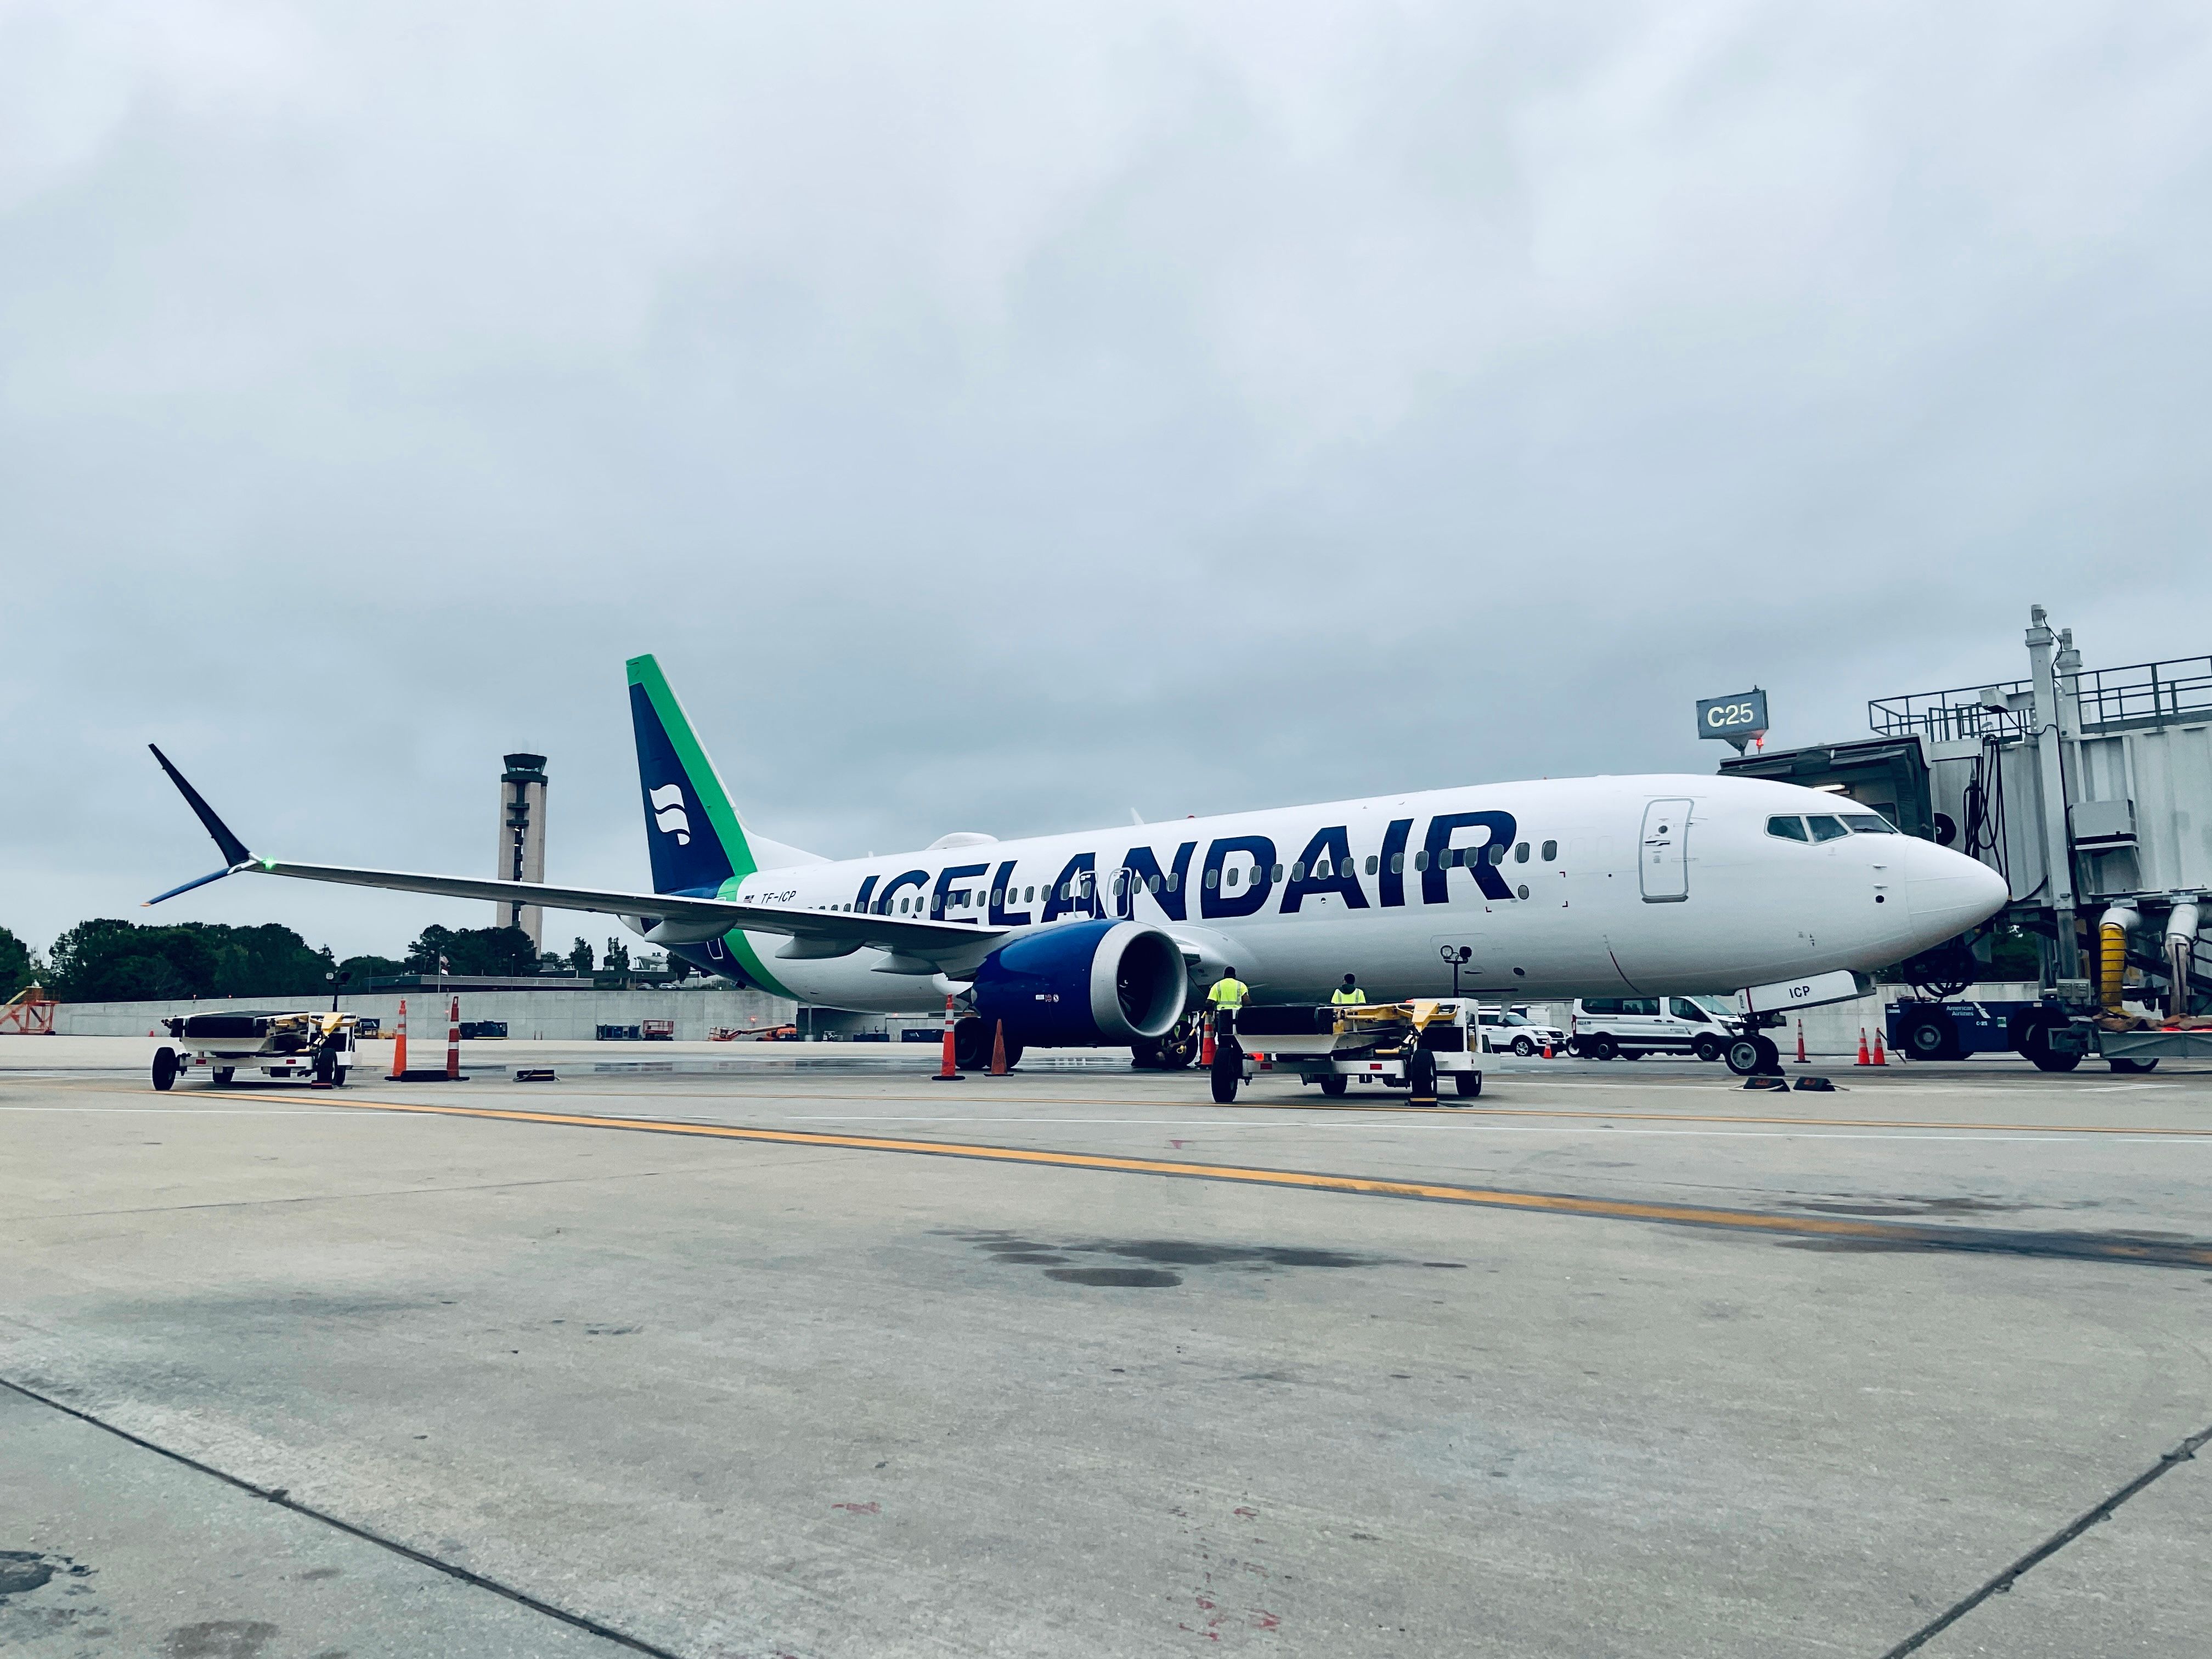 Iceland air 737 max 8 at RDU